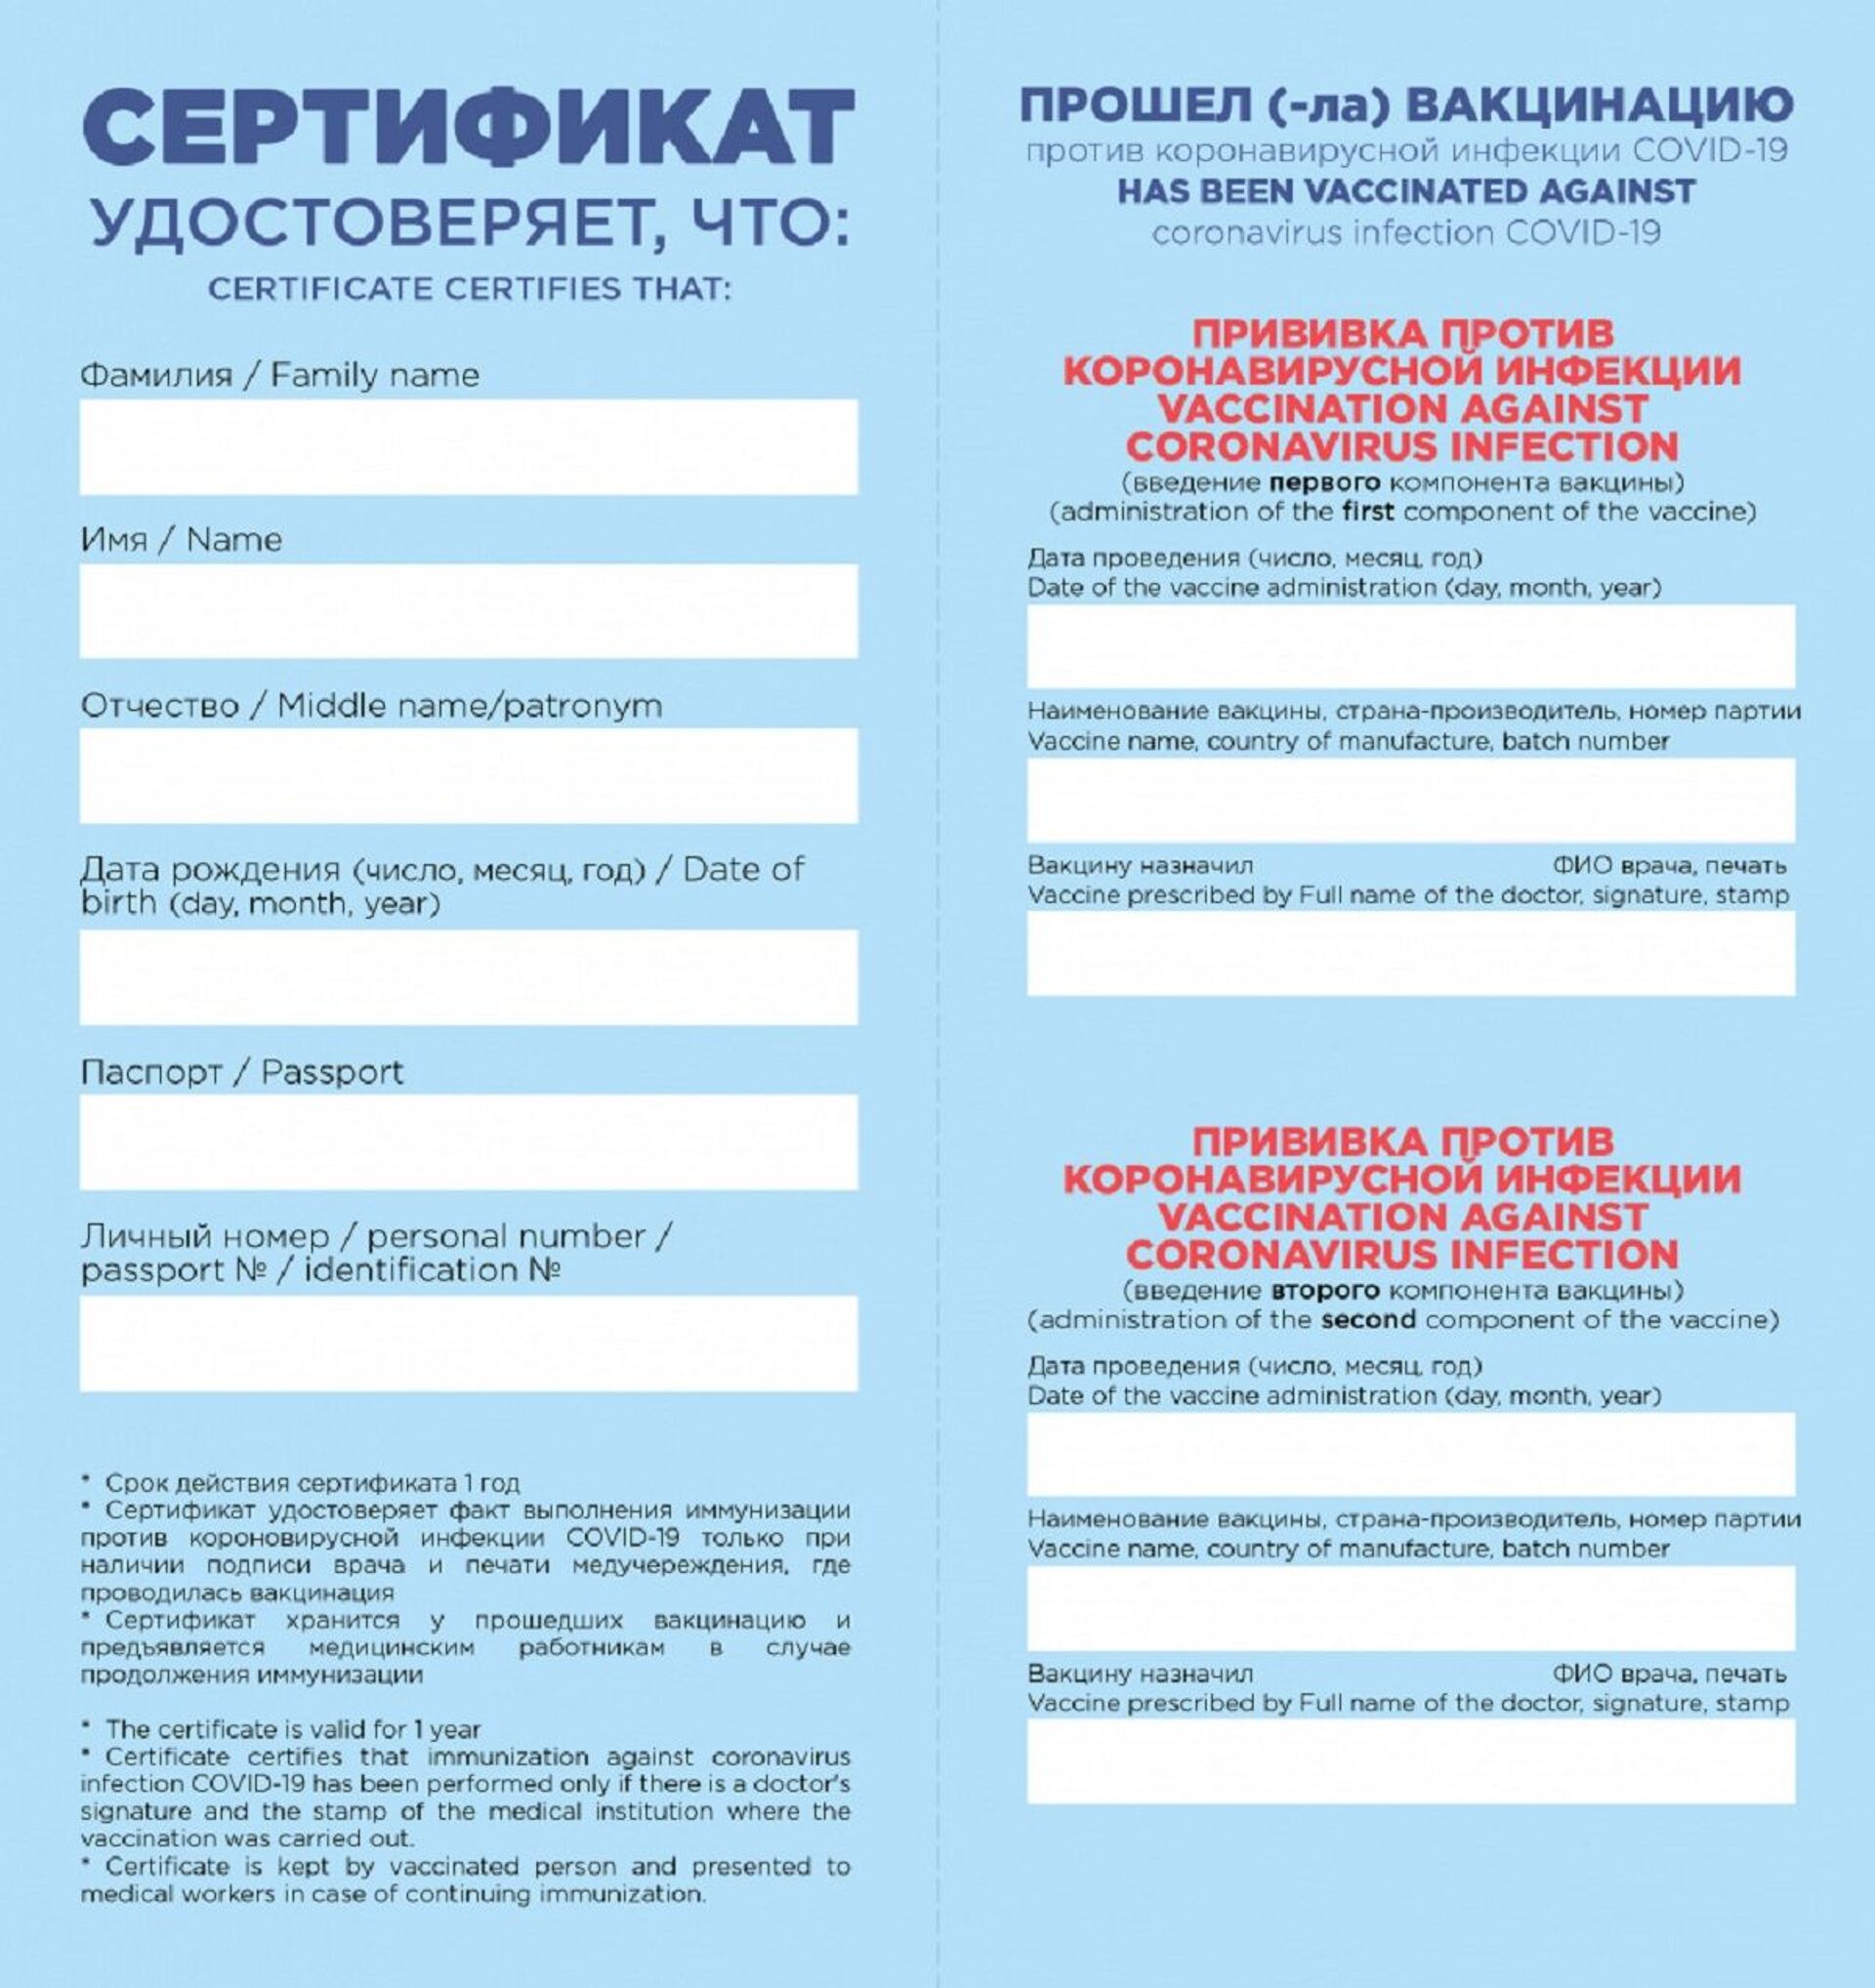 Сертификаты о вакцинации начнут выдавать в Беларуси - Sputnik Беларусь, 1920, 26.04.2021